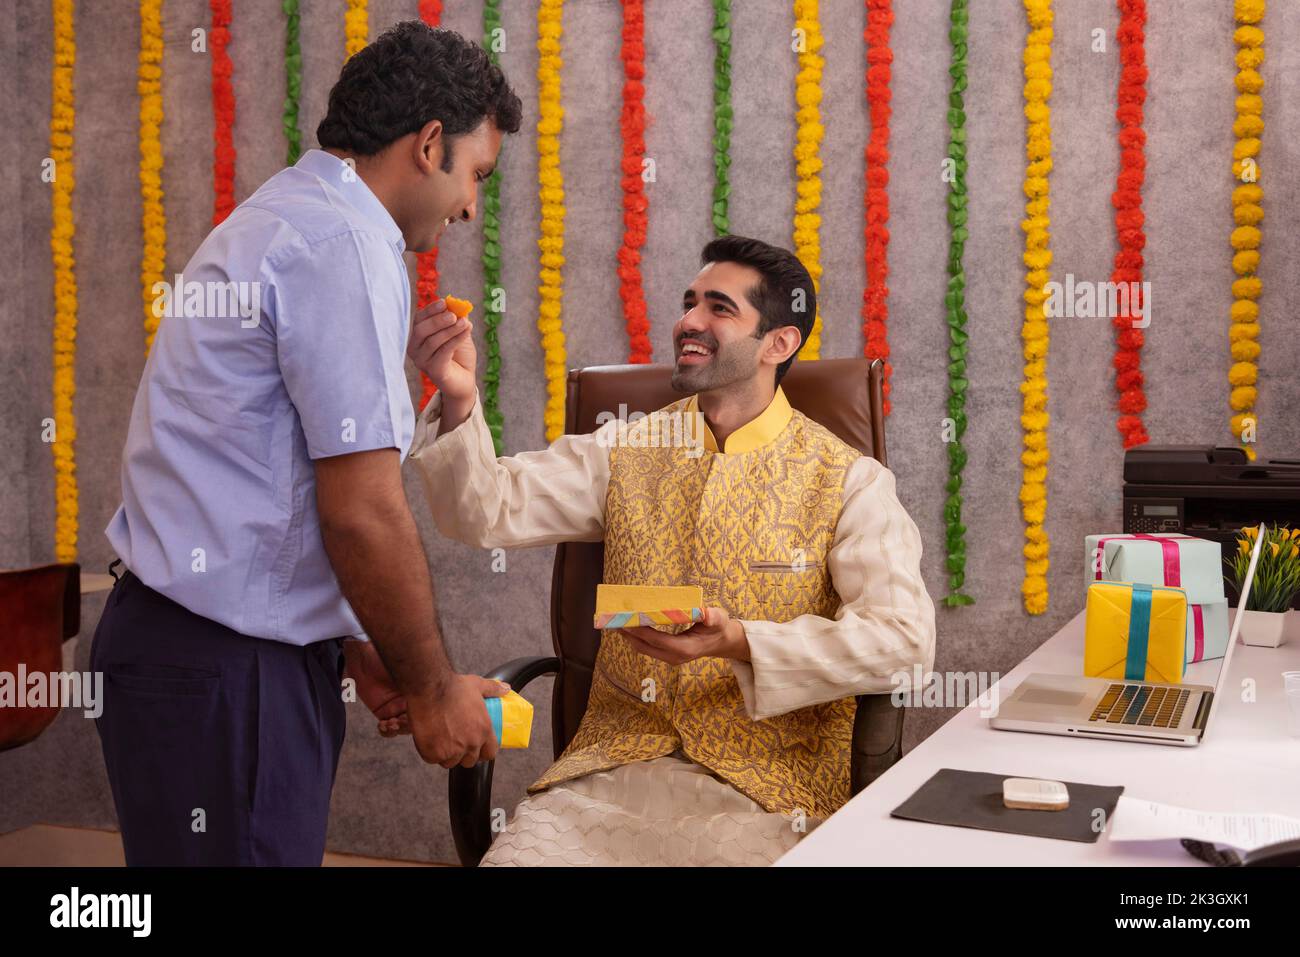 Employé nourrissant des ladoos à son collègue pendant la fête de Diwali Banque D'Images